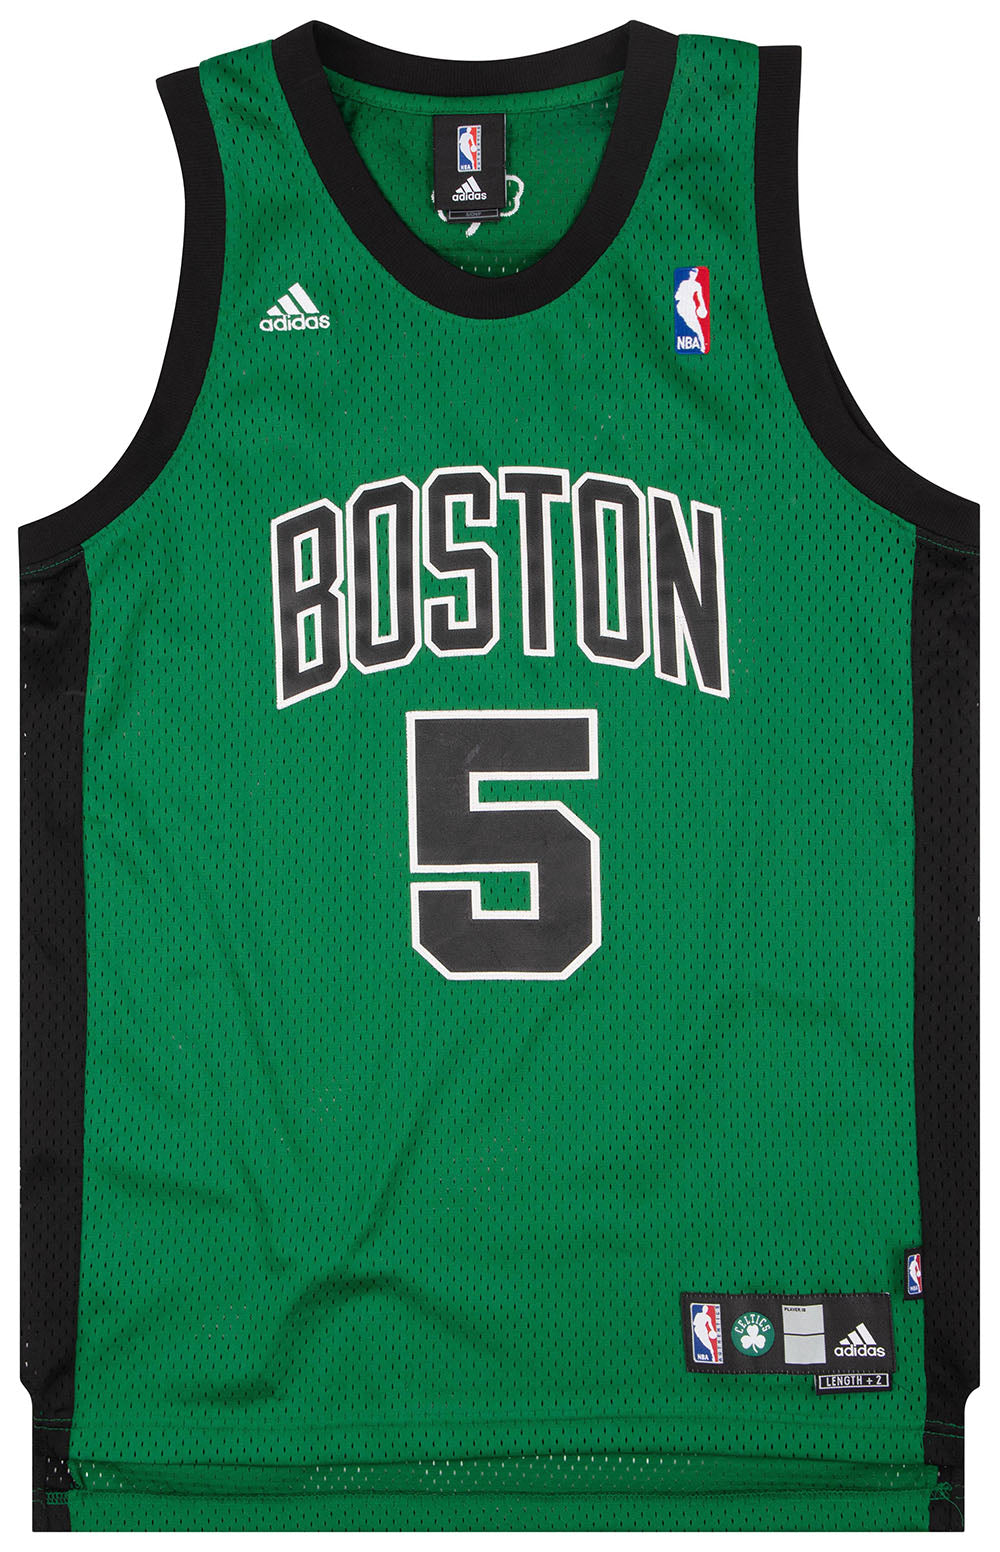  adidas Boston Celtics #5 Kevin Garnett Green Road Swingman  Basketball Jersey (X-Large) : Sports Fan Jerseys : Sports & Outdoors